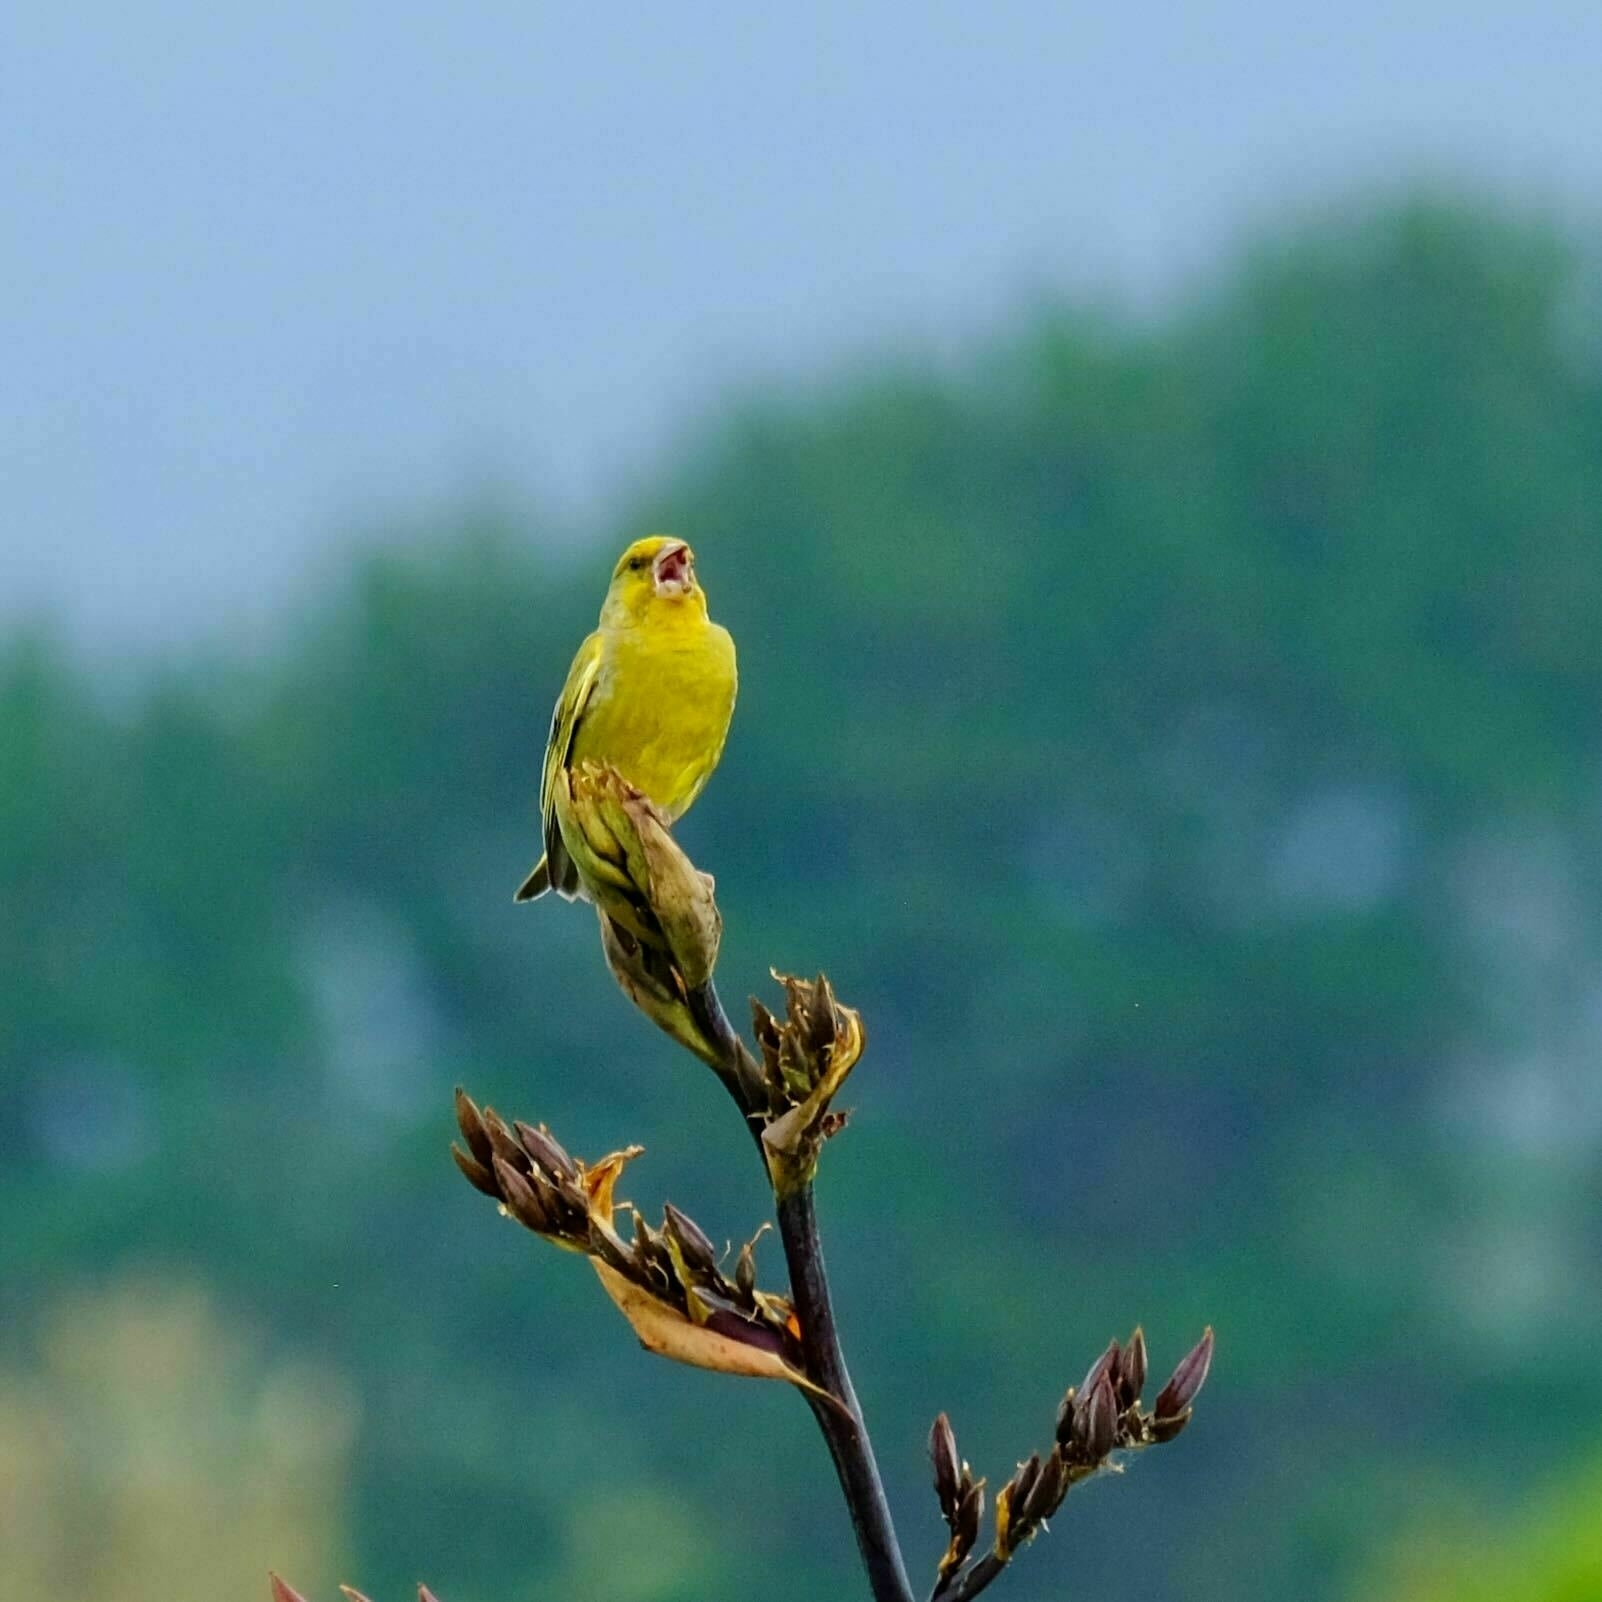 Small yellow bird, singing. 